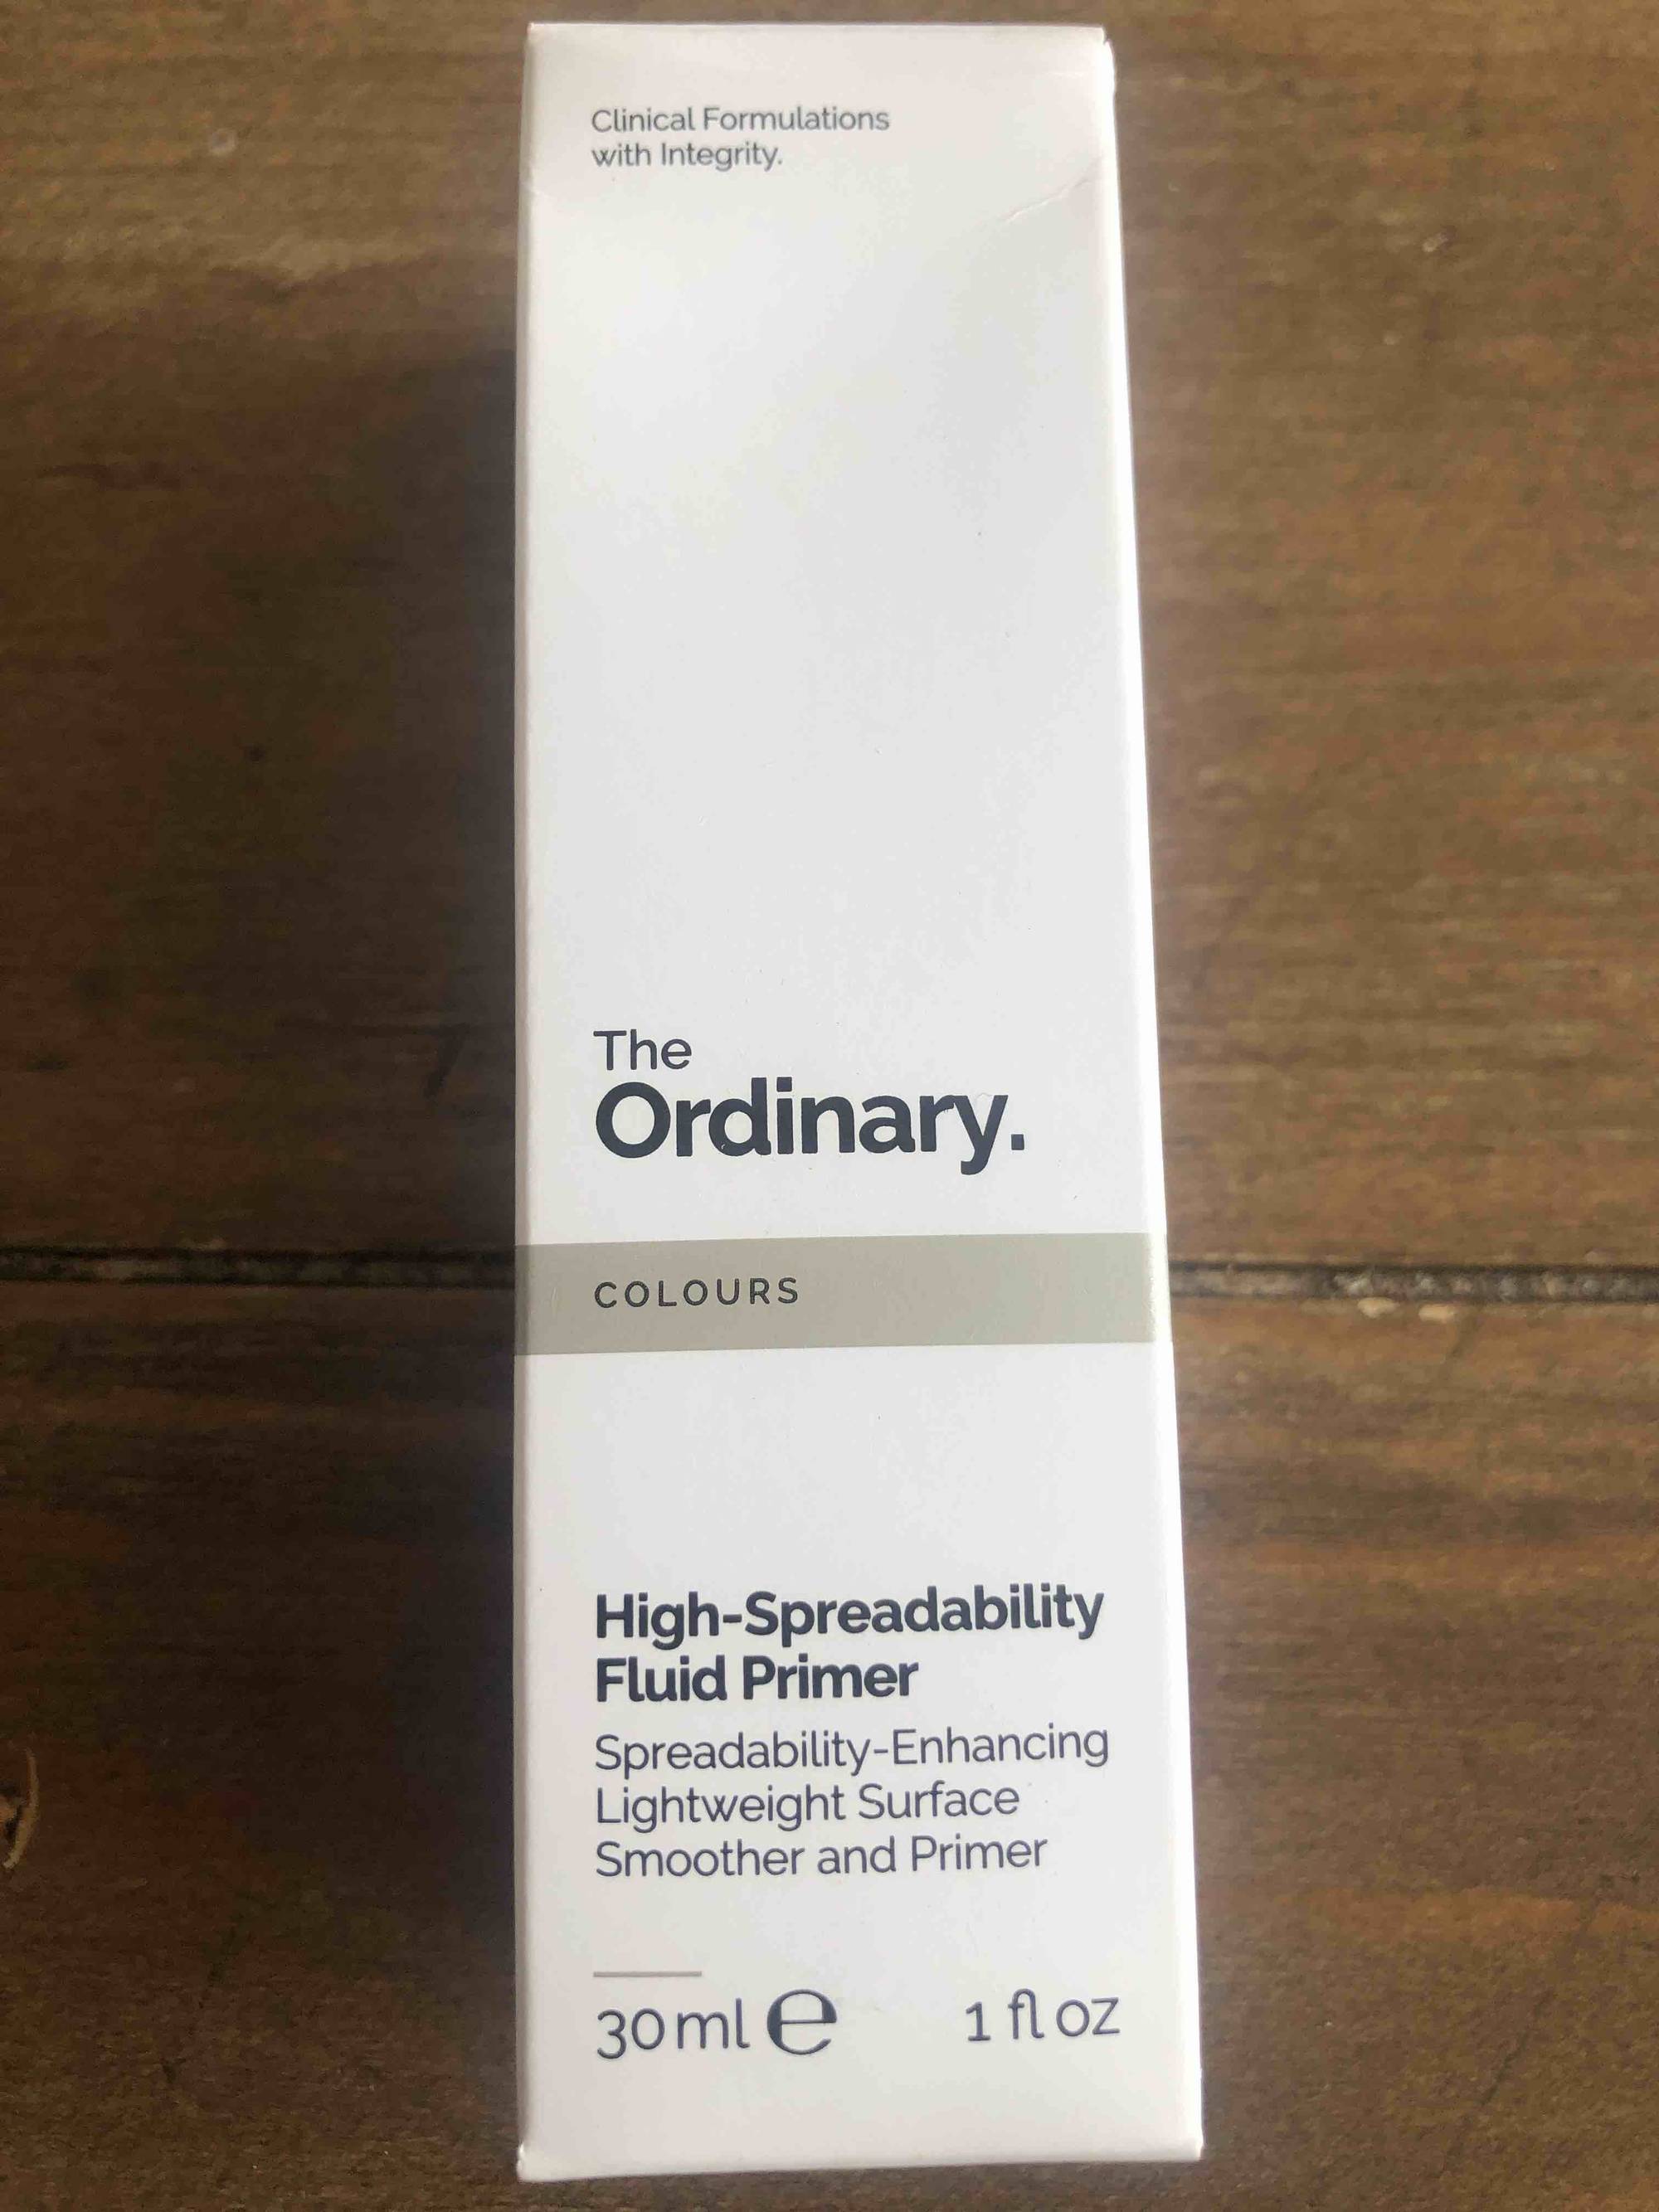 THE ORDINARY - High-spreadability fluid primer